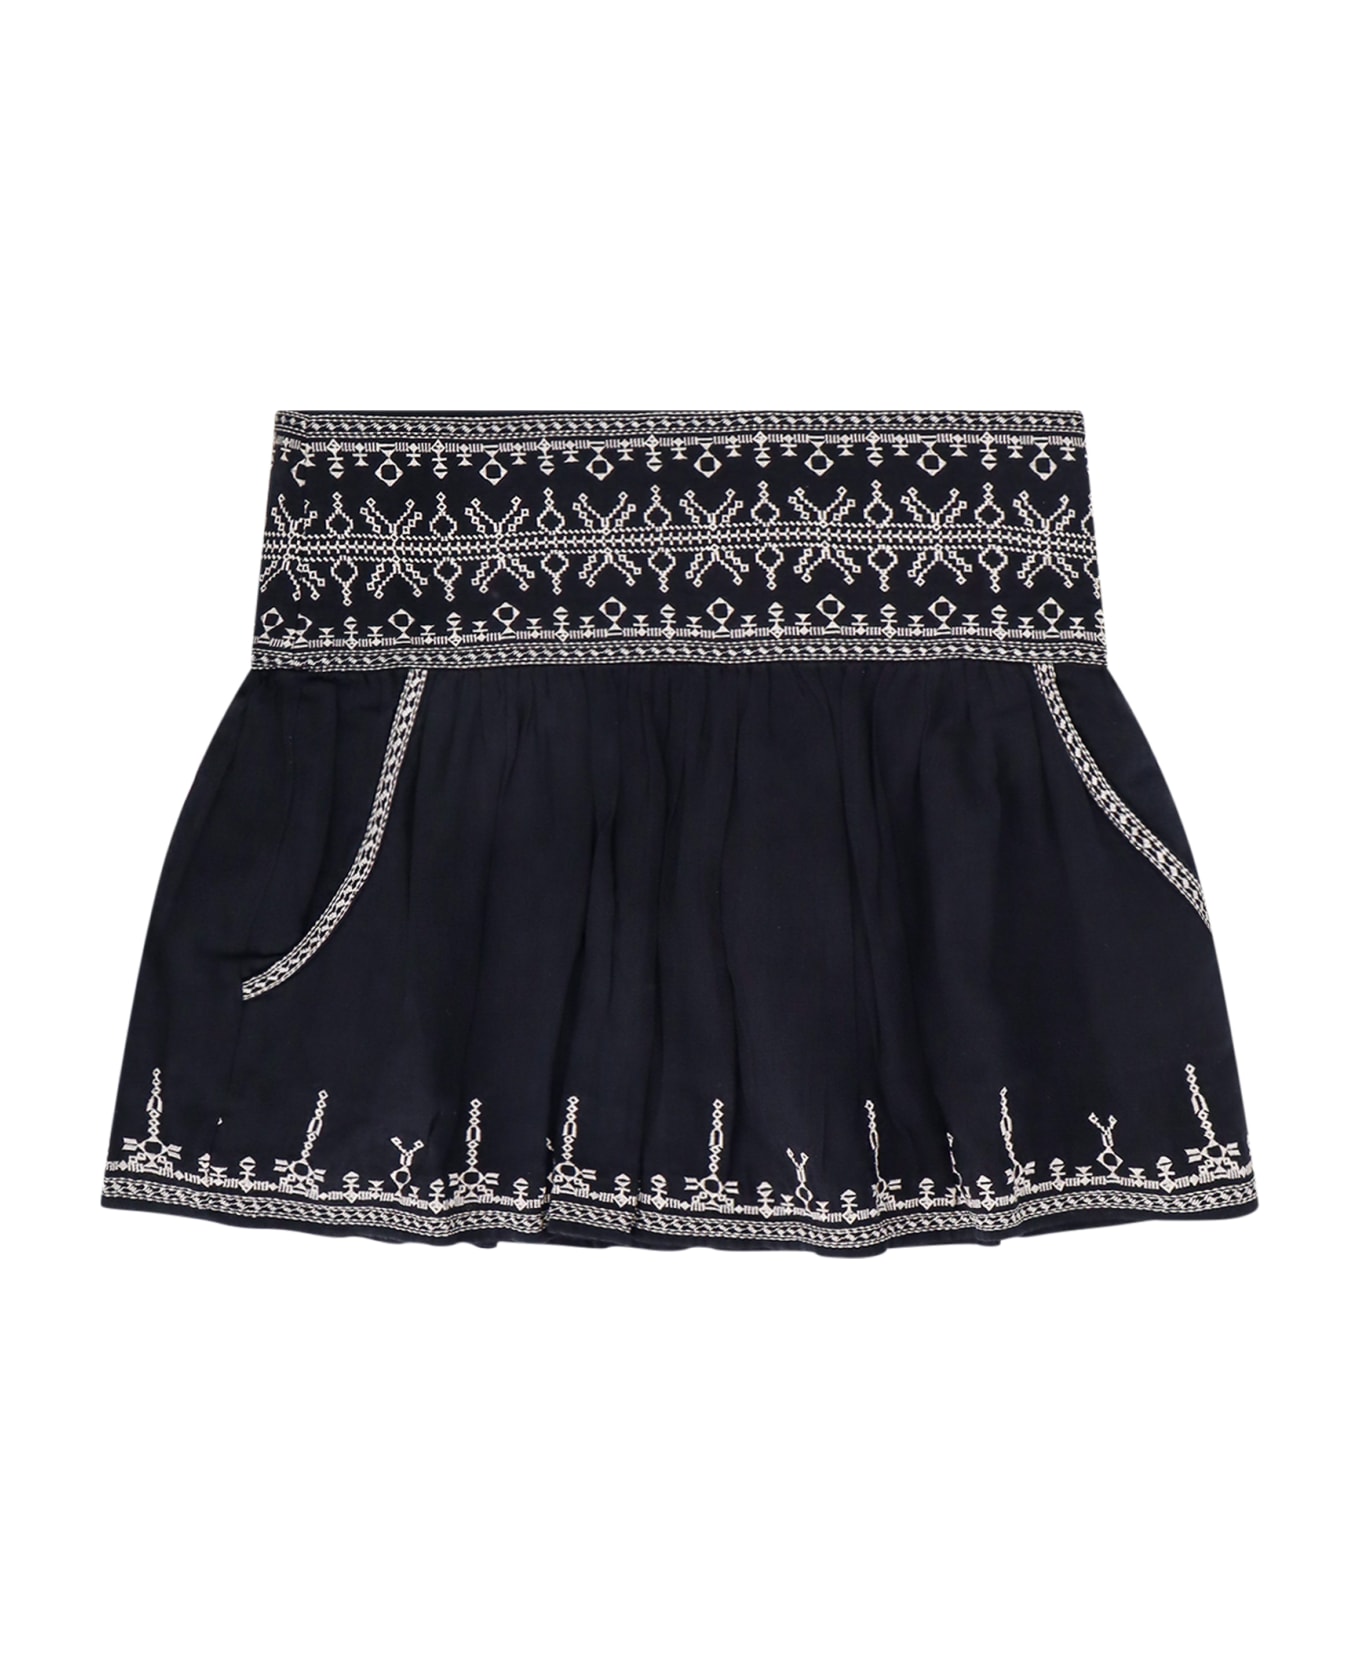 Marant Étoile Picadilia Skirt - Black スカート